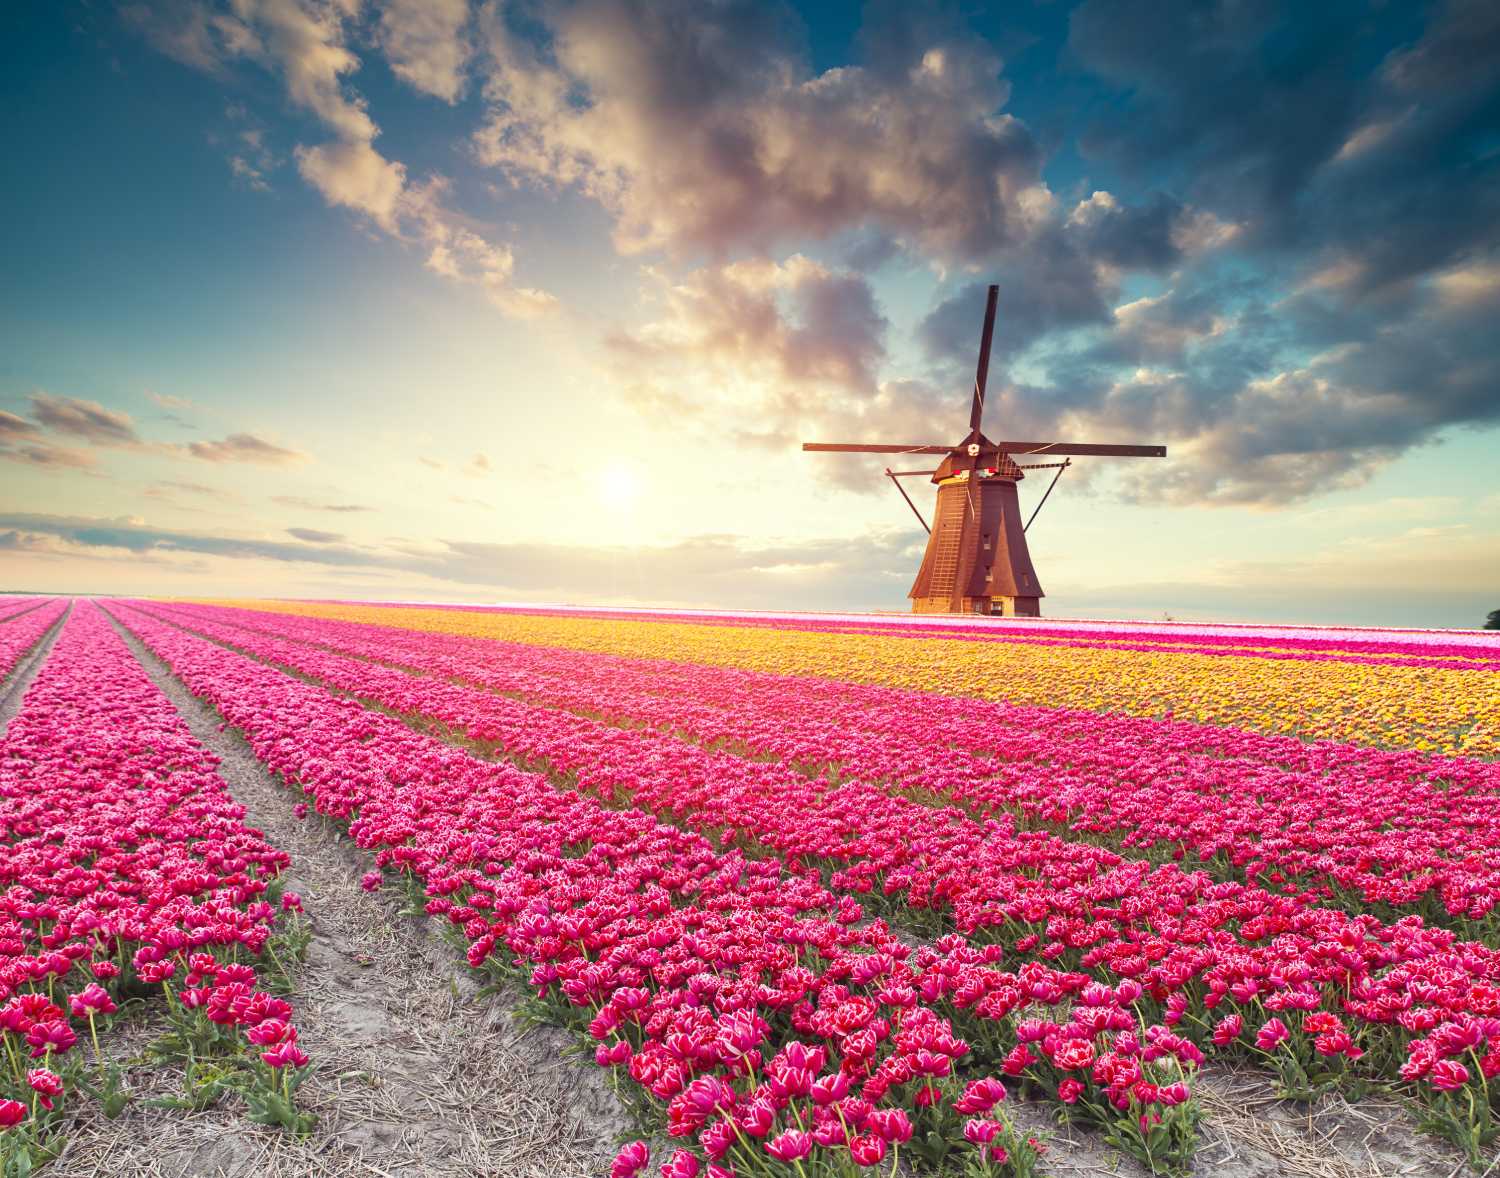 Windmill in a field of tulips